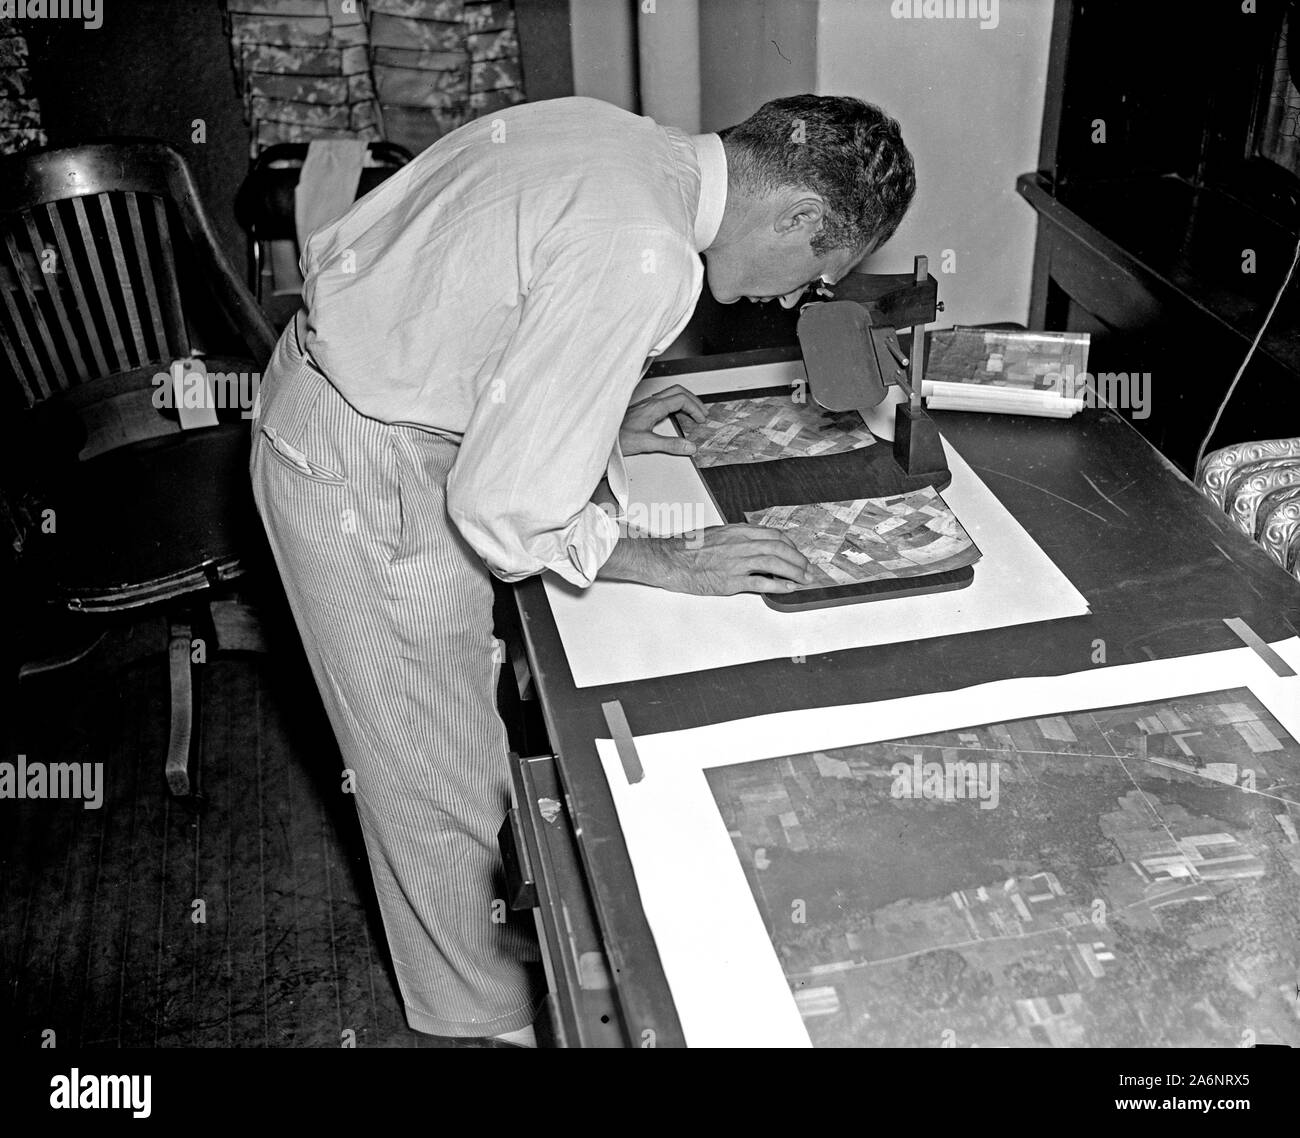 Ein Arbeitnehmer ist dargestellt, die eine stereoskopische Prüfung der fertigen Fotoabzüge die Linderung oder Erhöhung von Fläche für eine Karte der Vereinigten Staaten zu bestimmen. 1937 Stockfoto